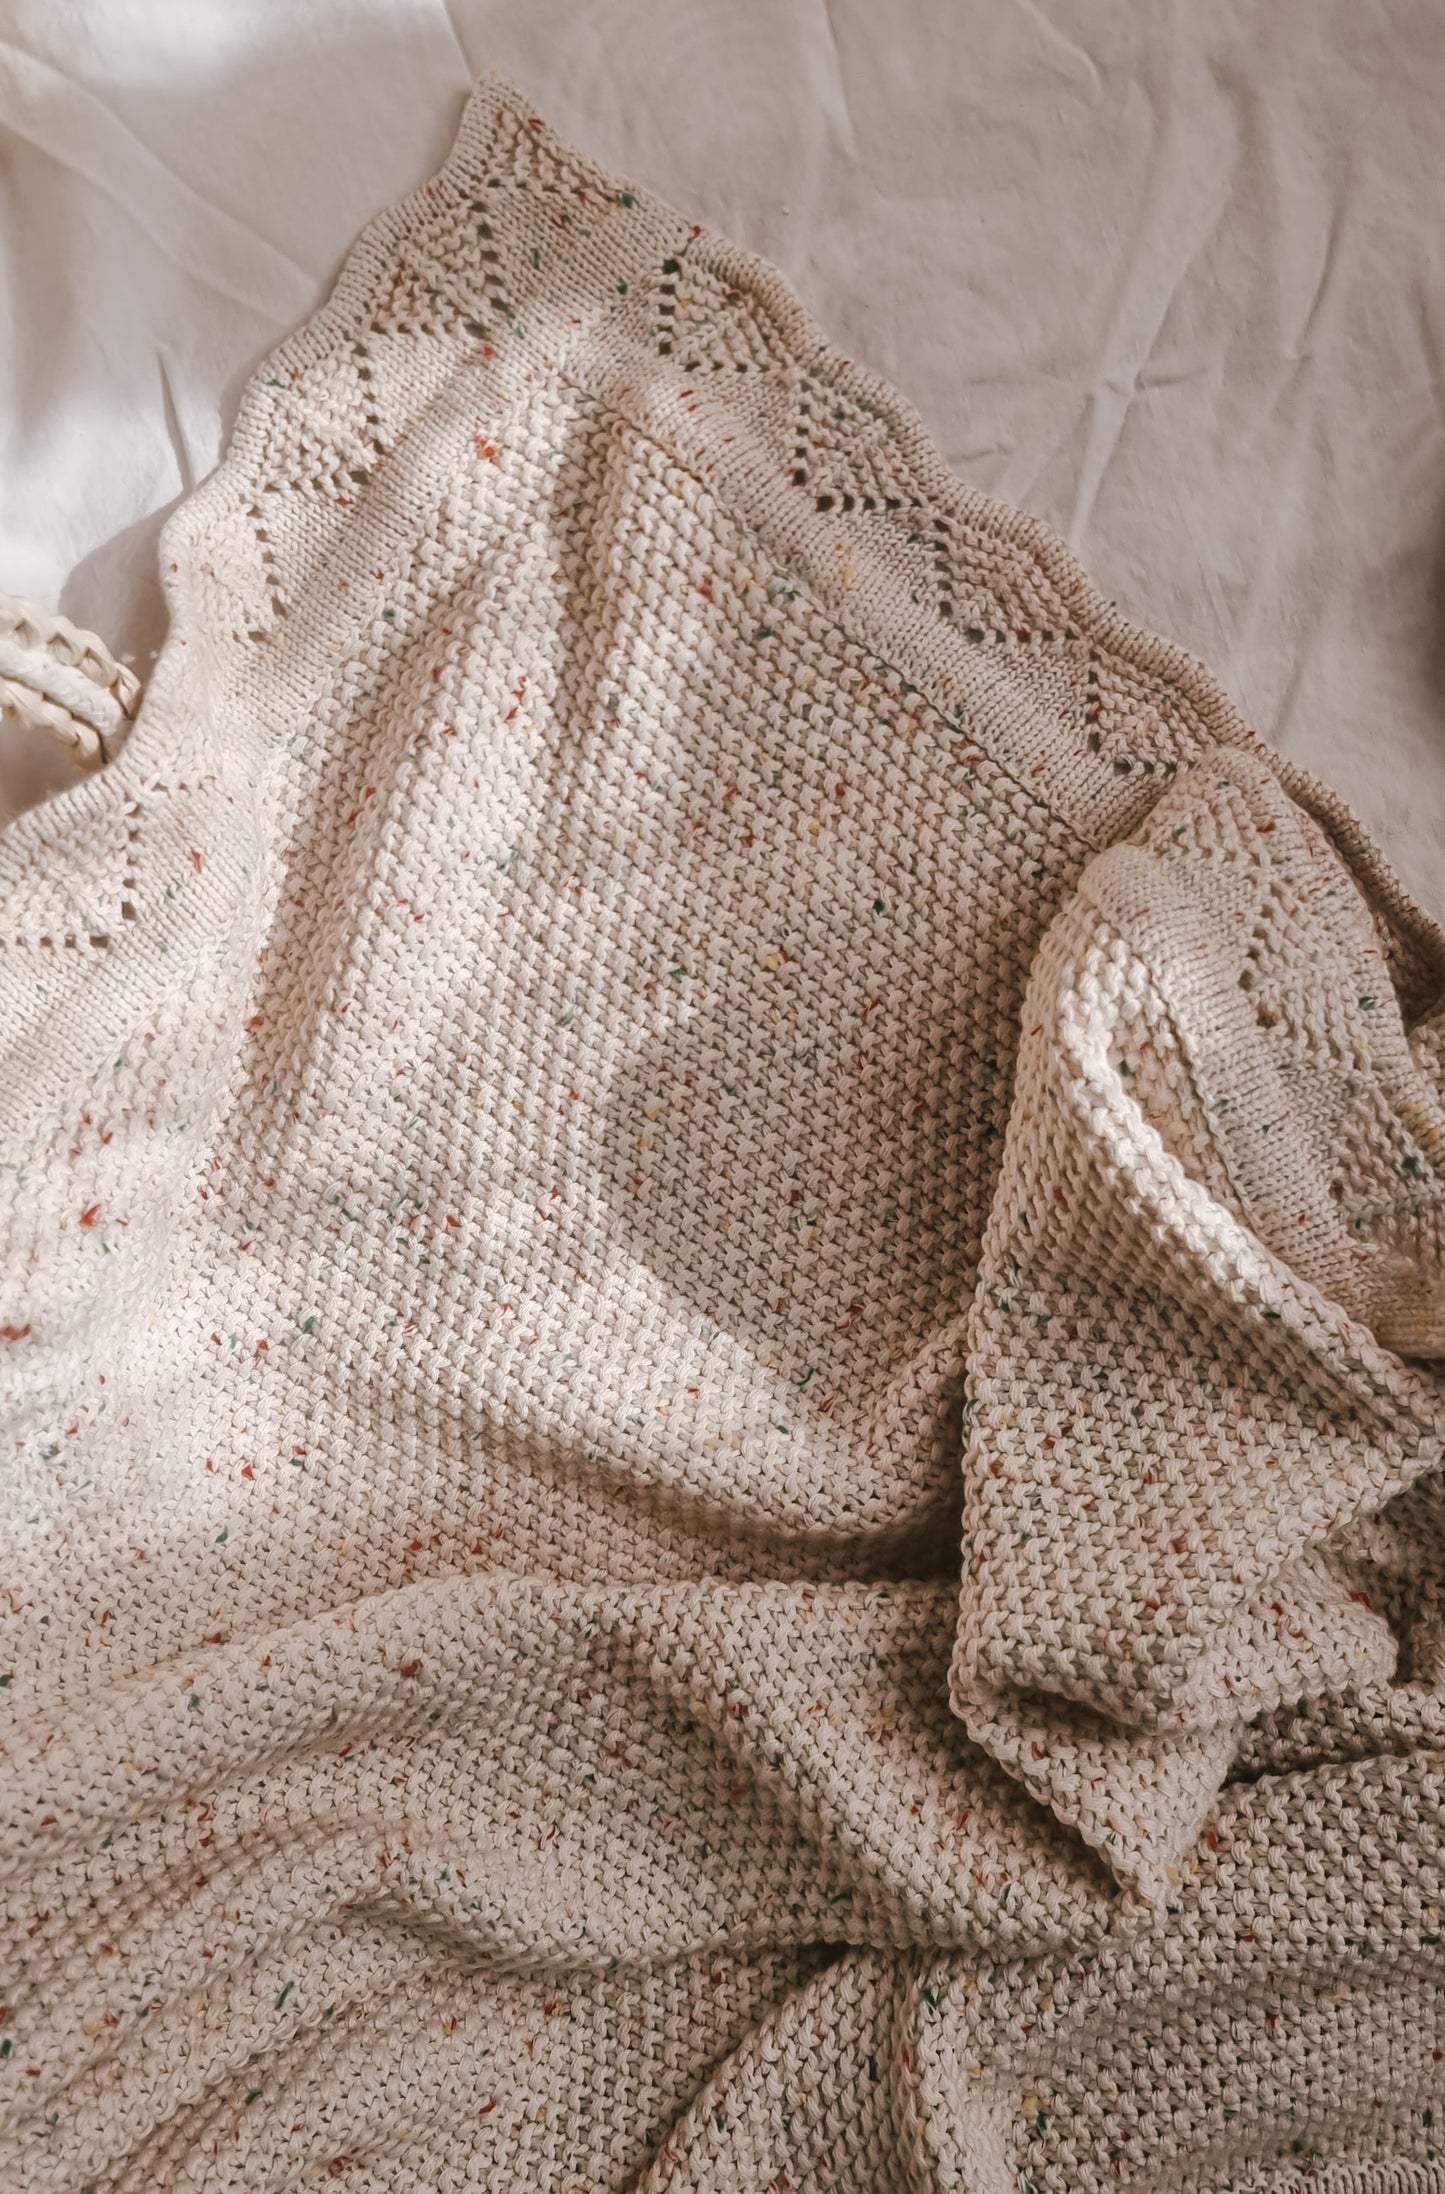 Heirloom knit Blanket